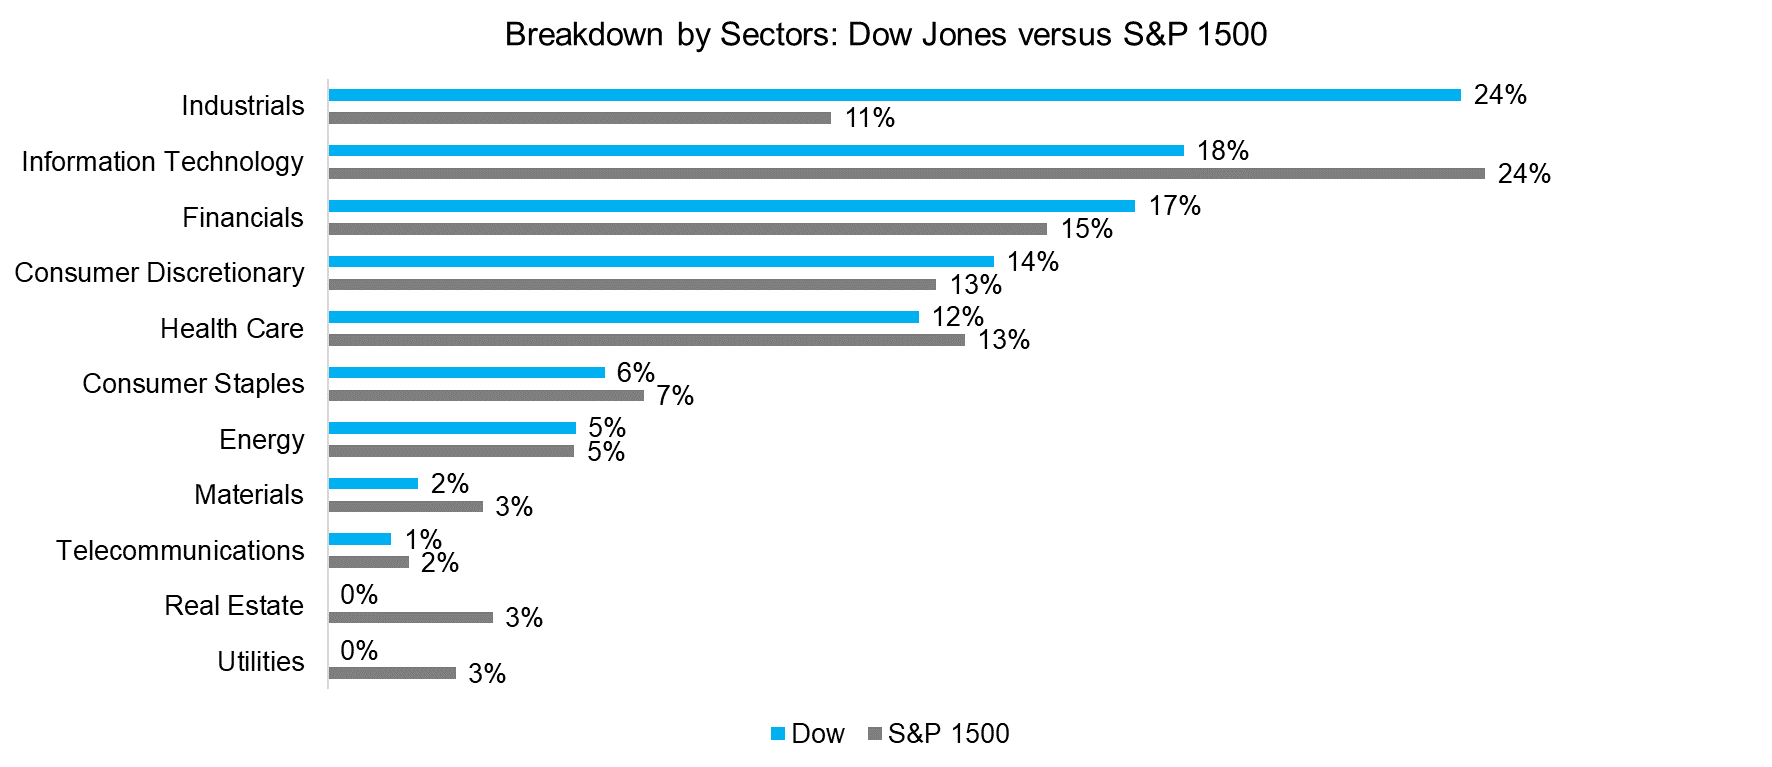 Breakdown by Sectors Dow Jones versus S&P 1500